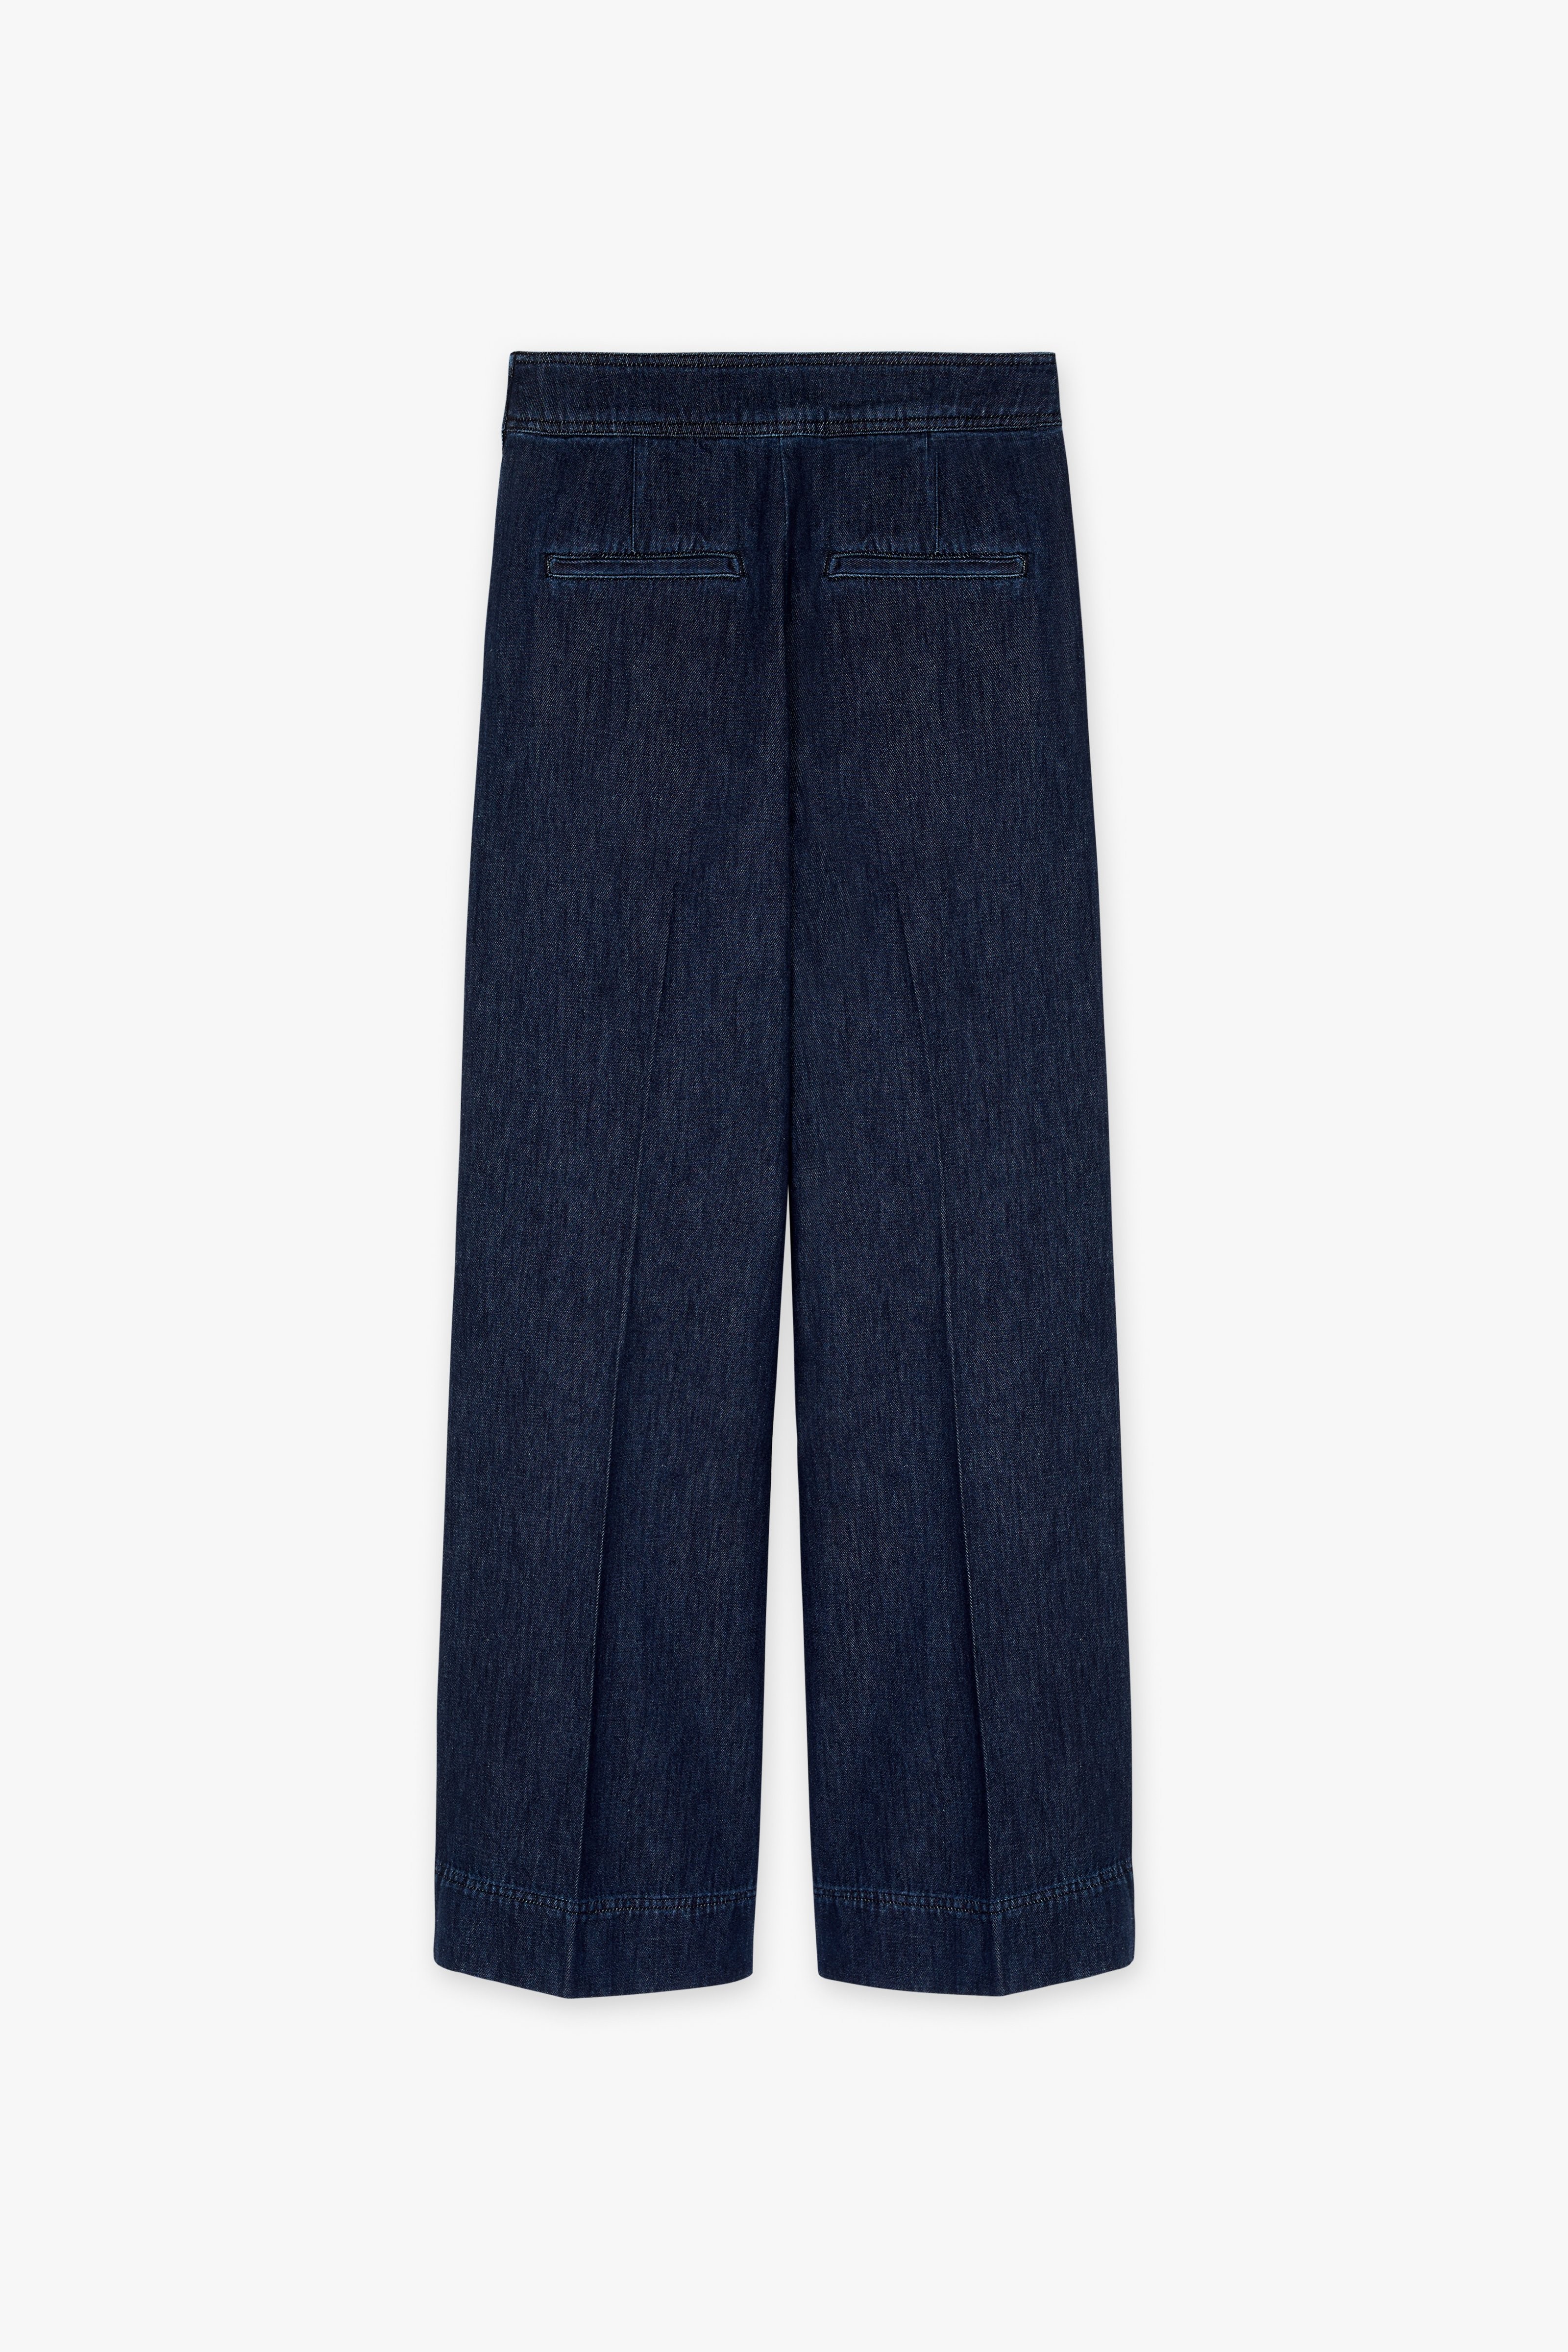 CKS Dames - TAIFOS - long jeans - dark blue